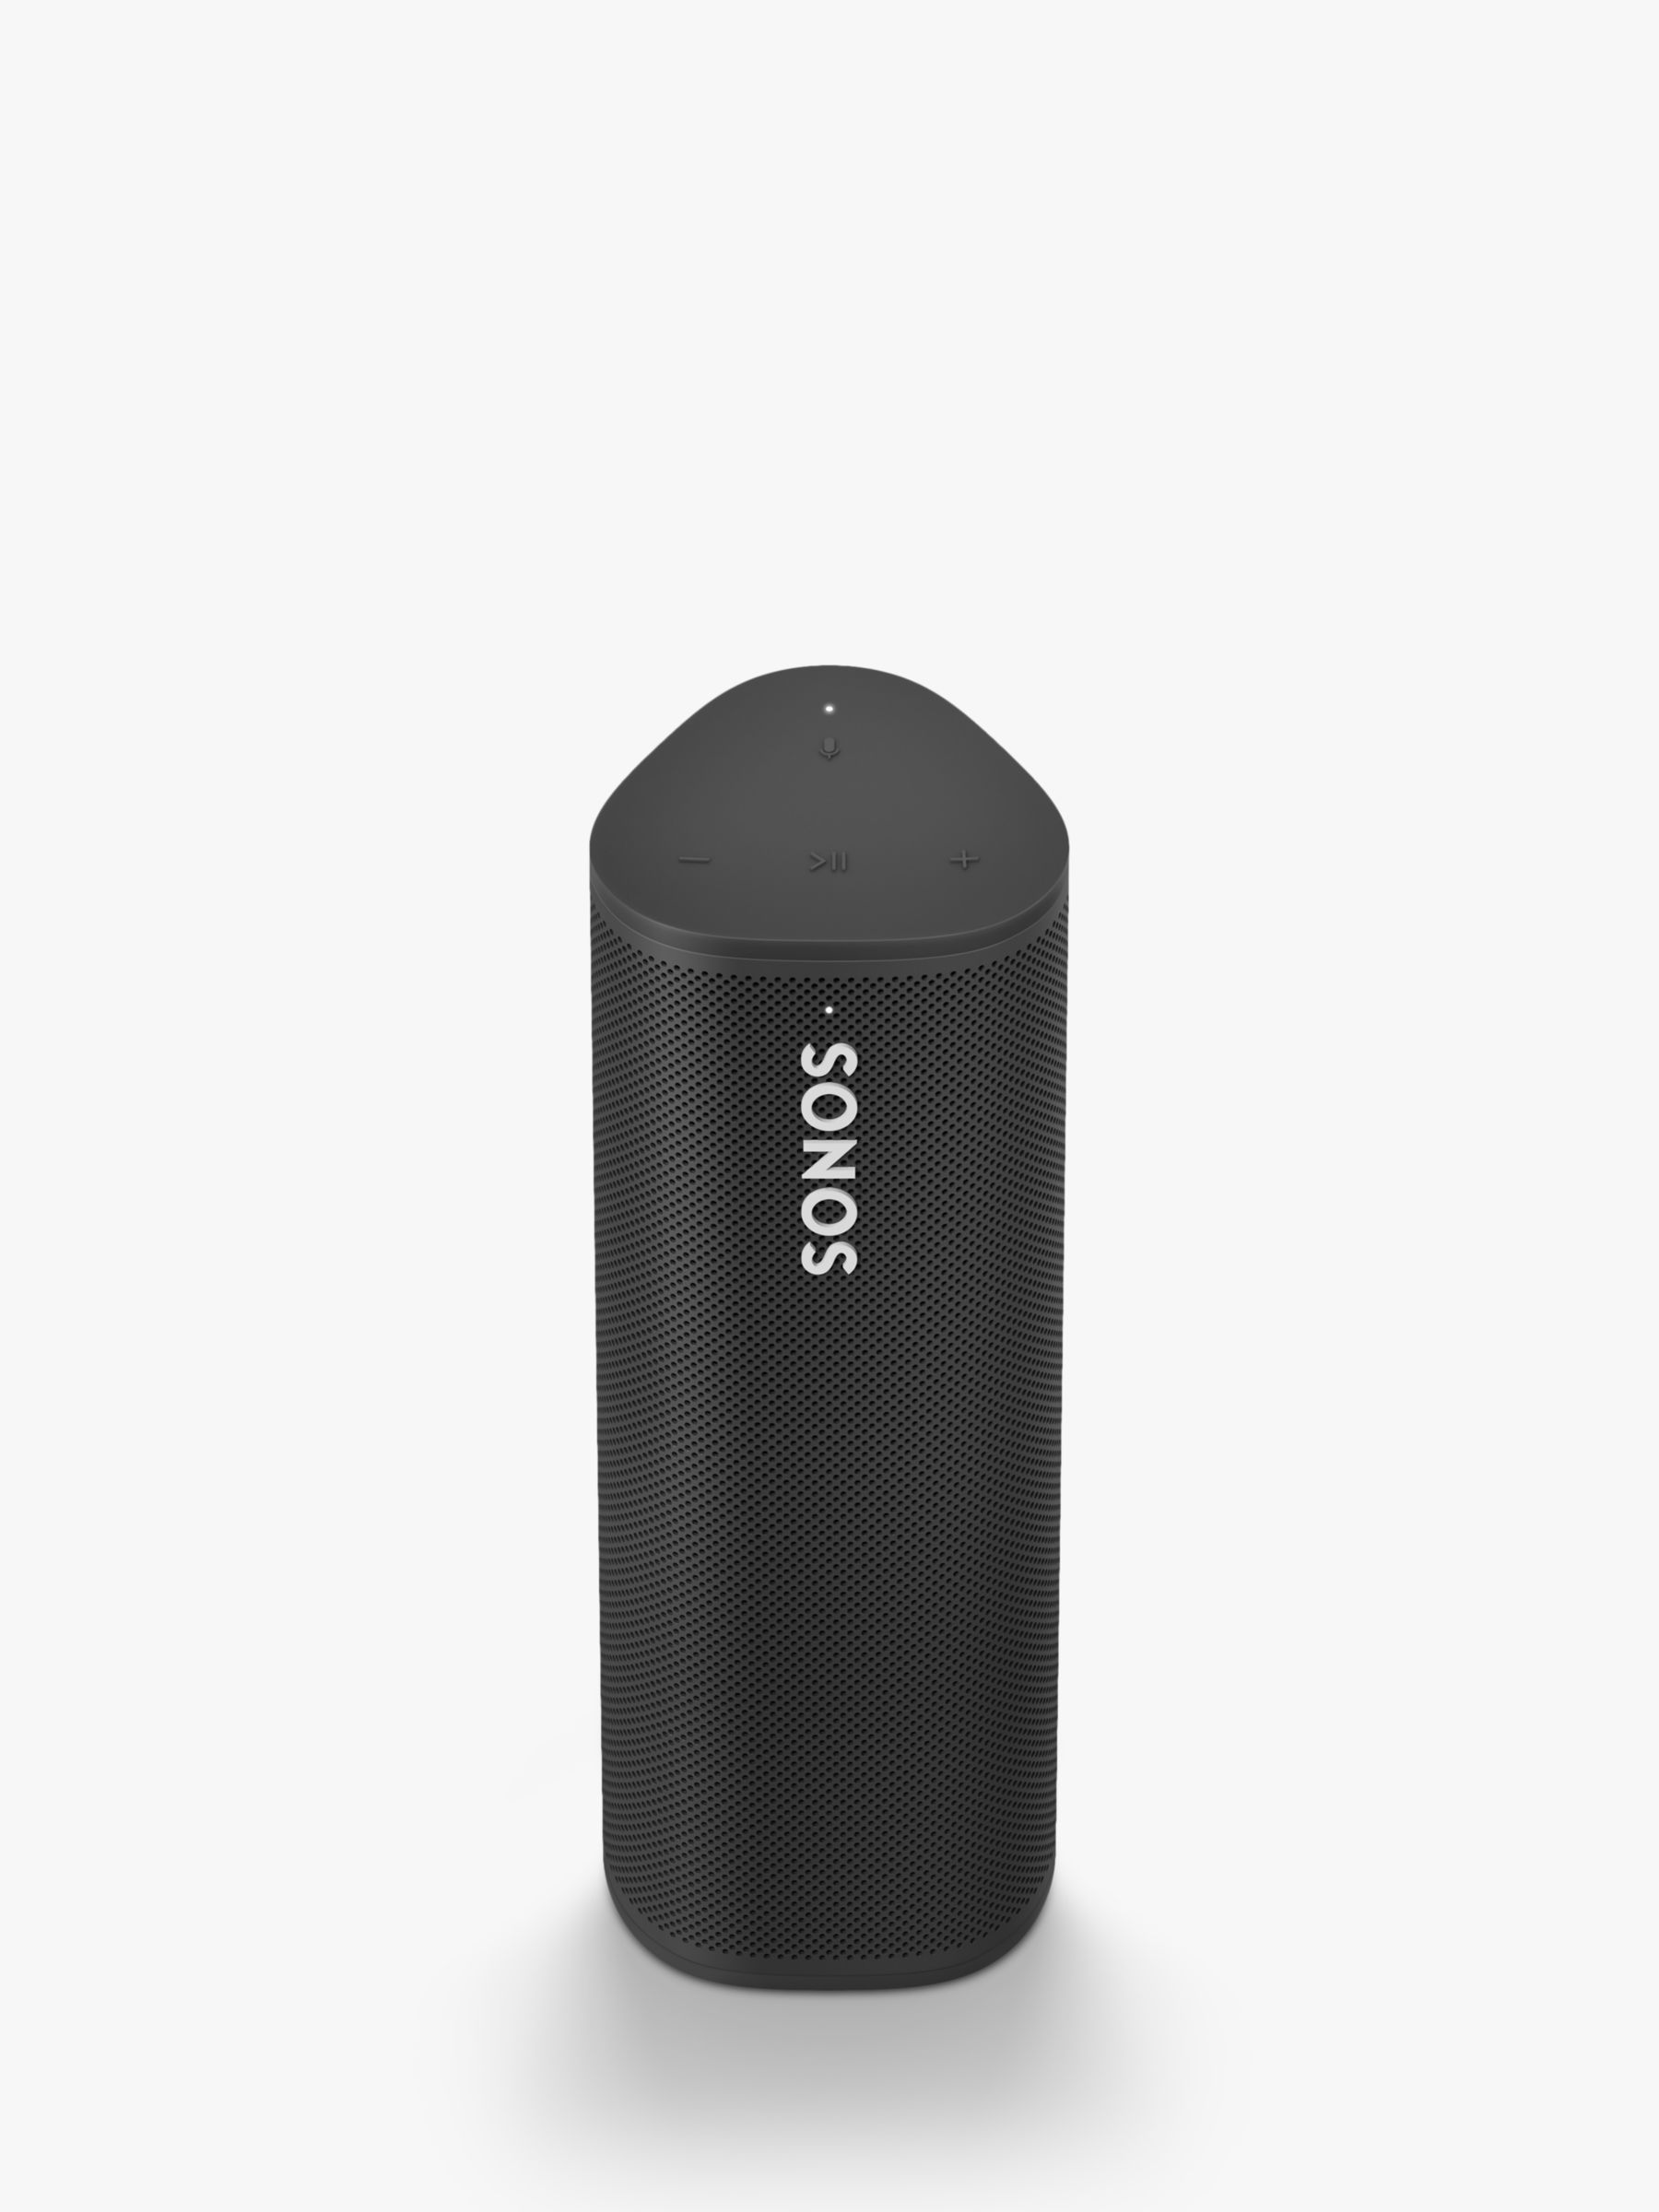 desempleo Optimismo Cartero Sonos Roam Smart Speaker with Voice Control, Black